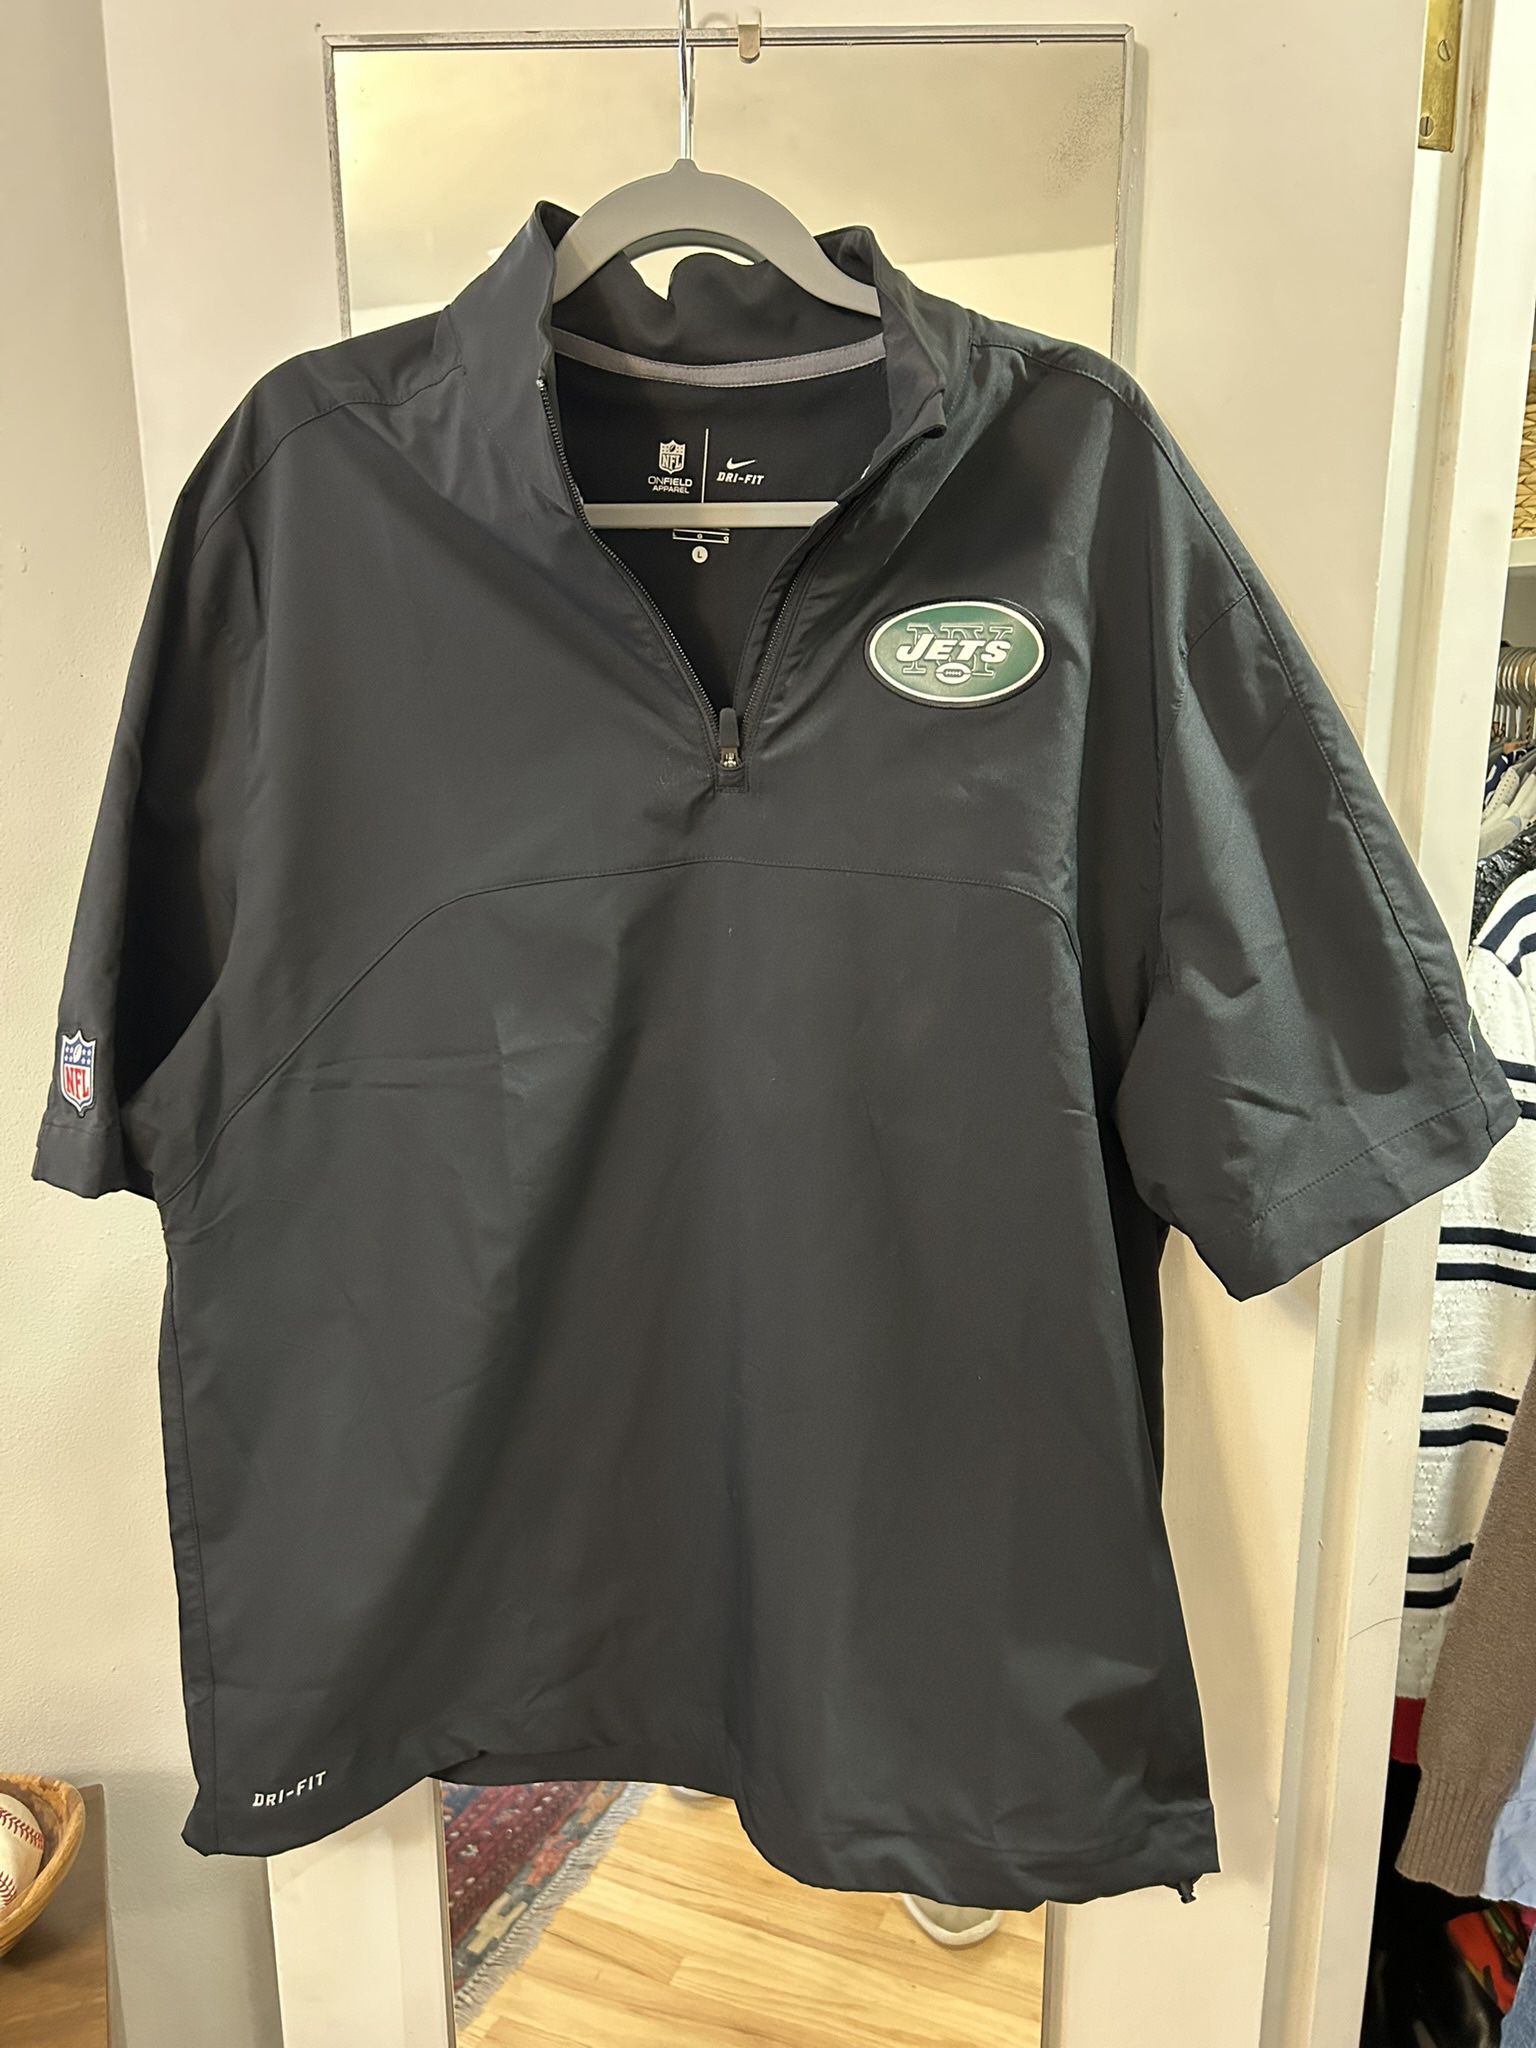 Black NY Jets Shirt